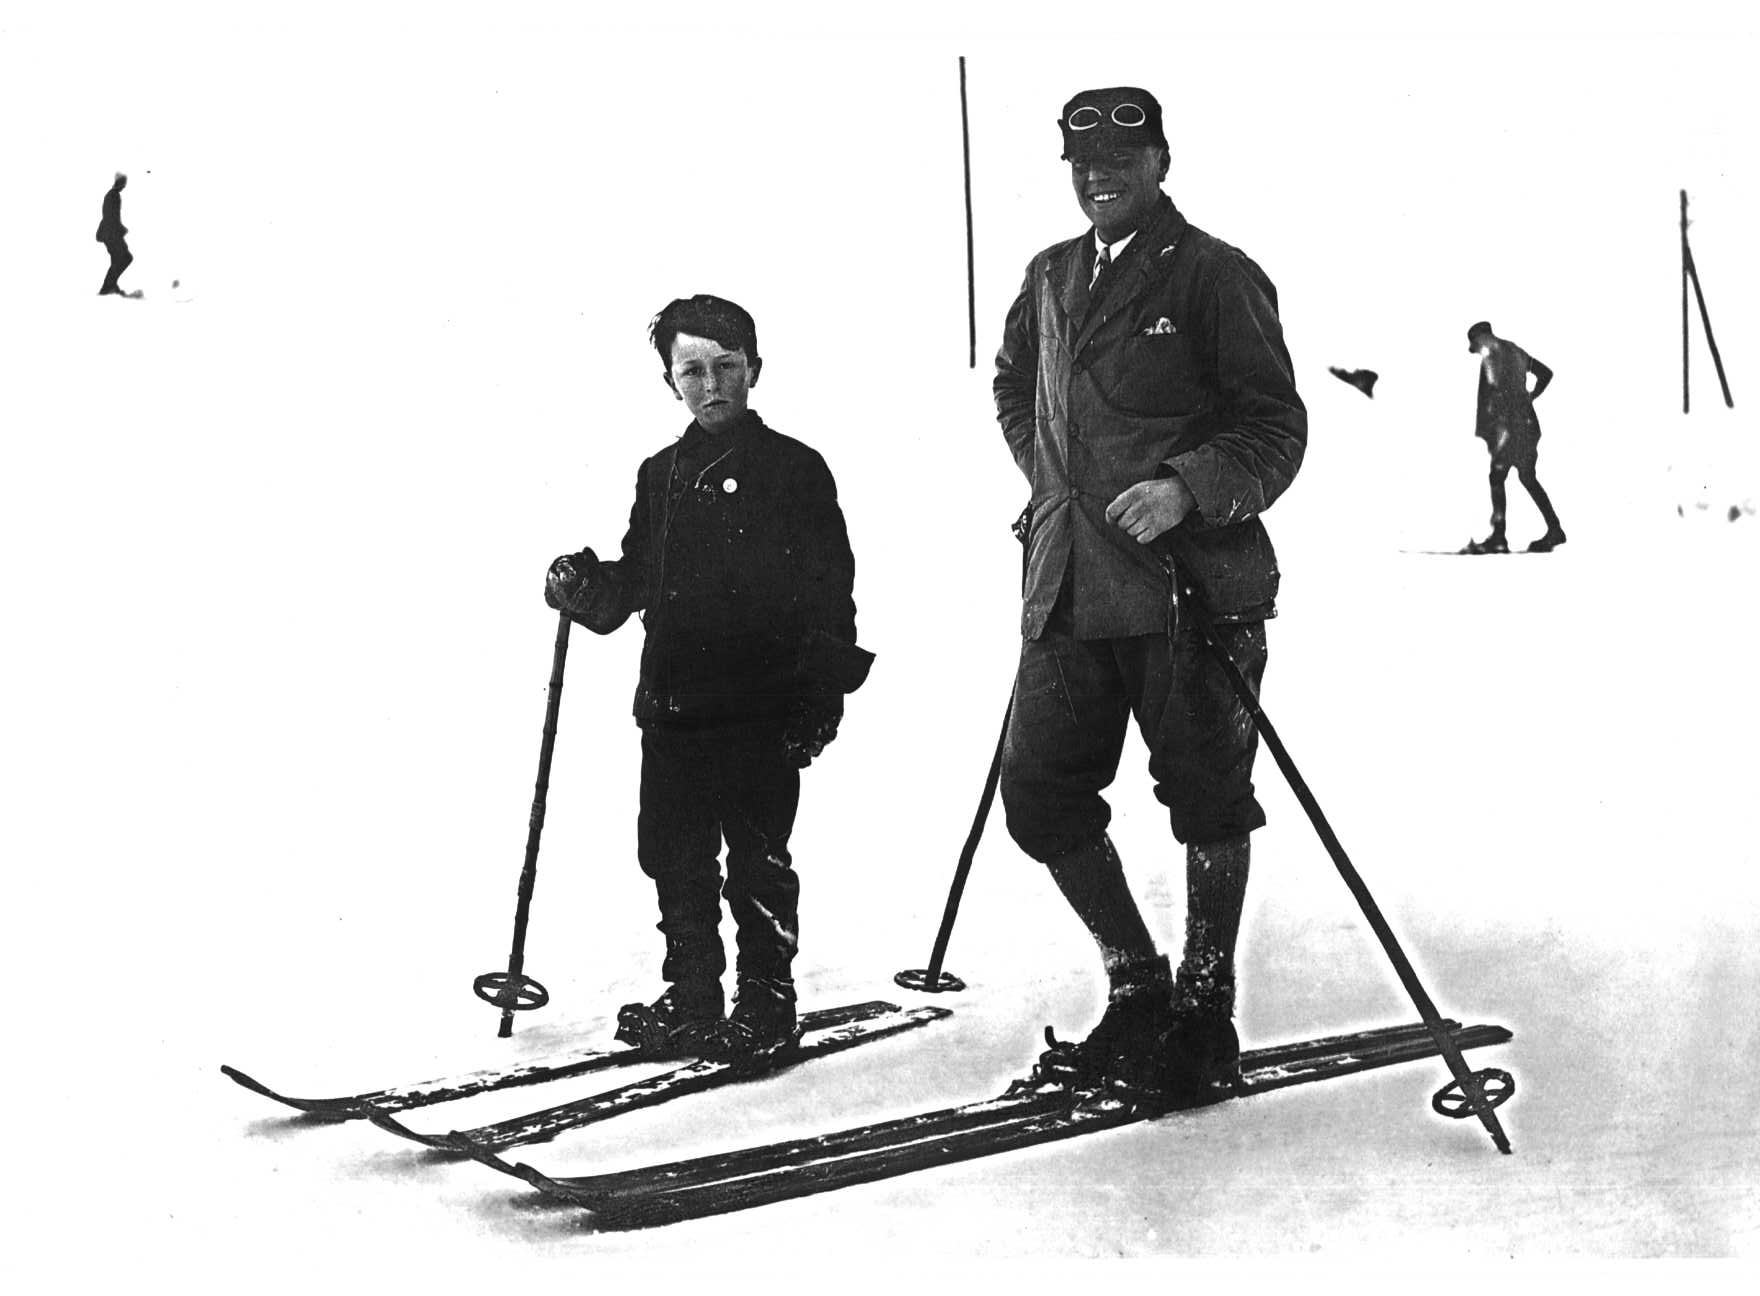 A man & boy skiing